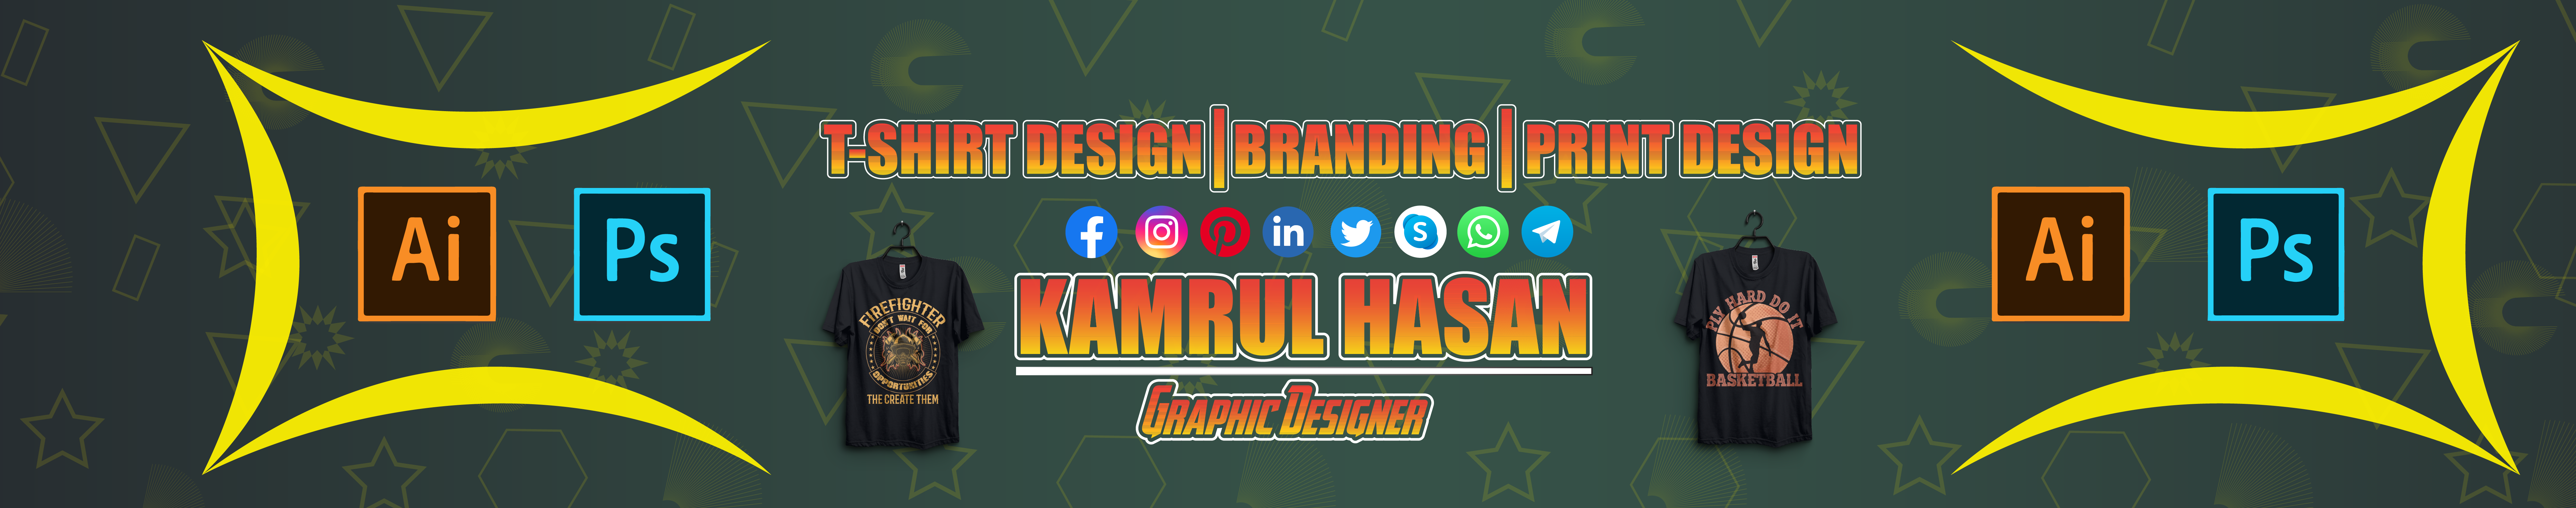 Kamrul Hasan's profile banner